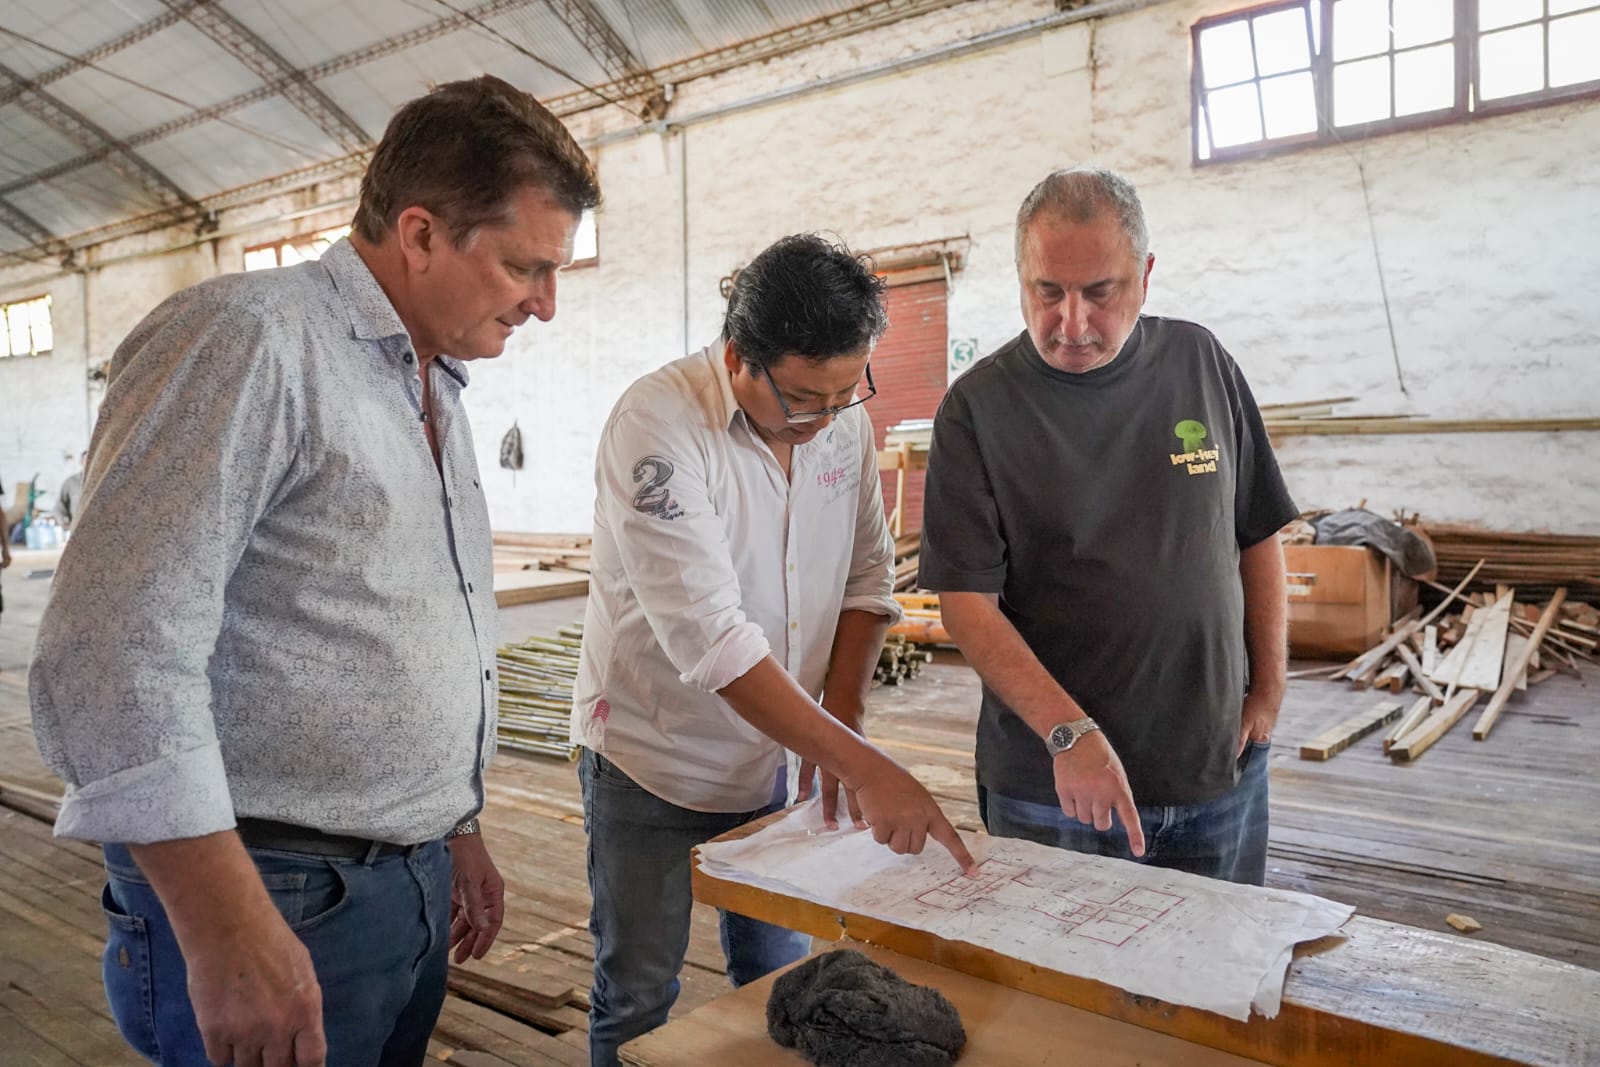 “La industria misionera no tiene techo gracias a la creatividad y pasión de nuestra gente”, consideró Passalacqua en visita a fábrica de casas de madera en Alem